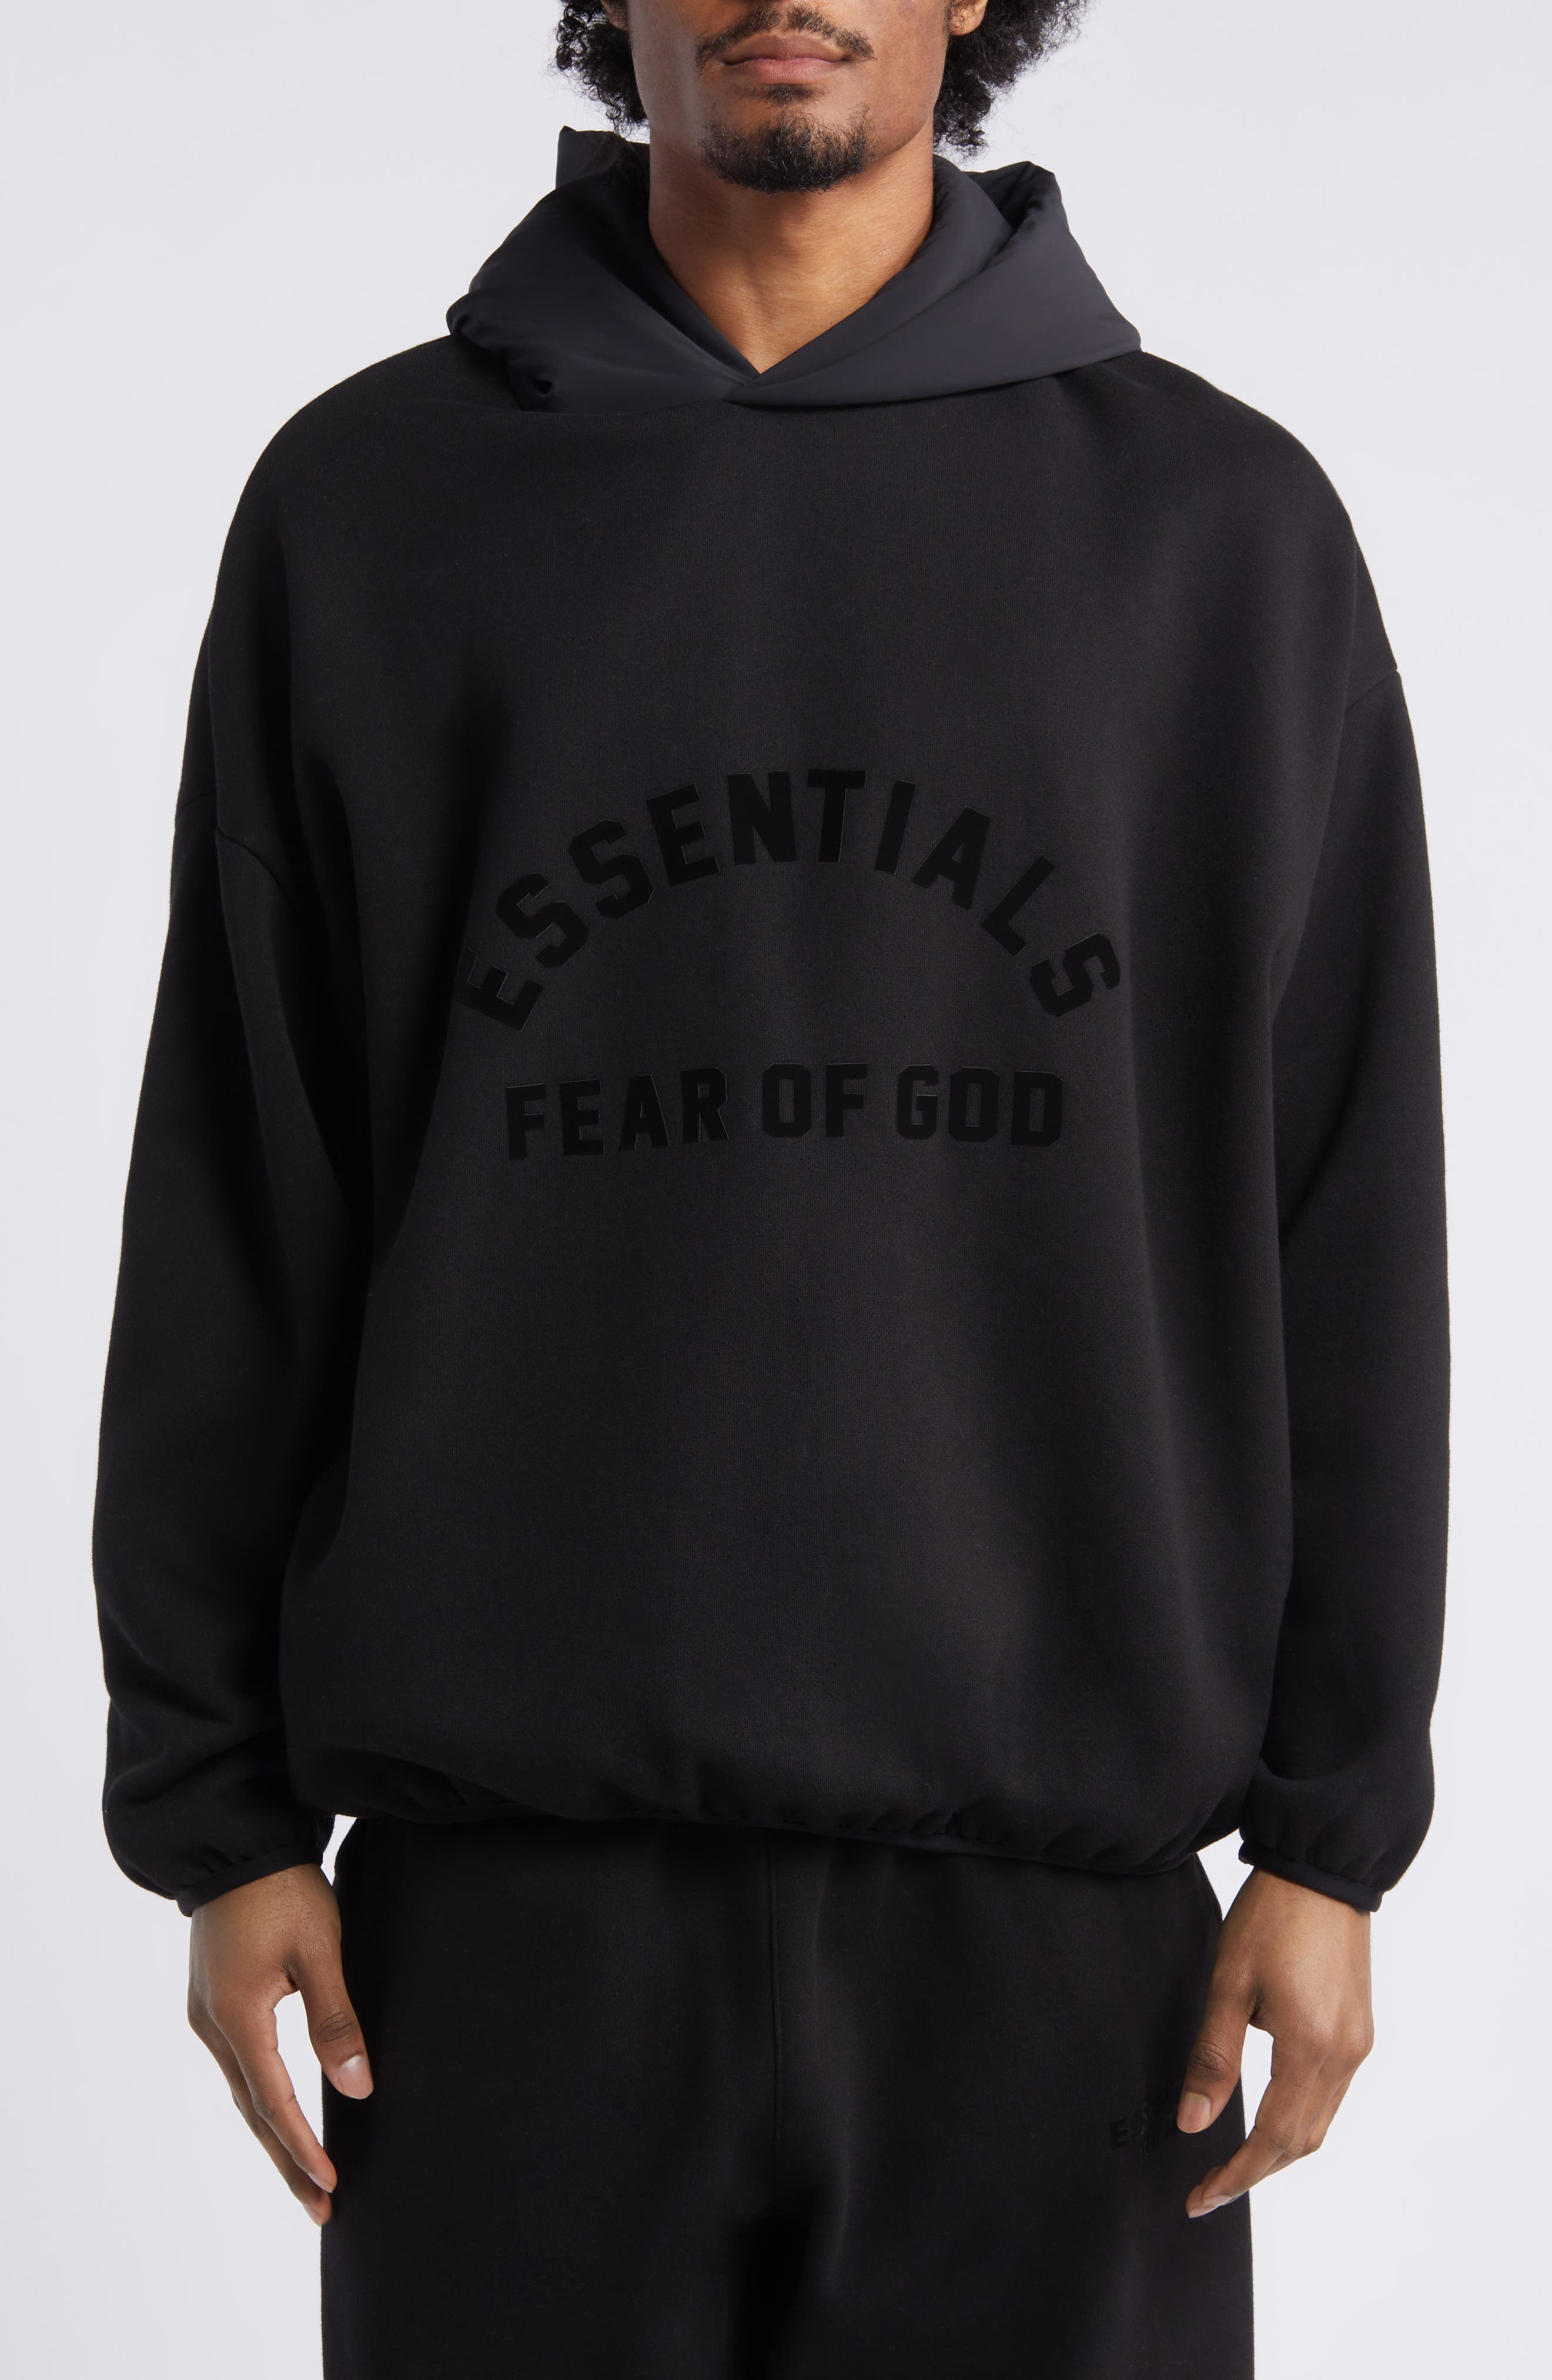 Shop Black Fear of God Essentials Online | Nordstrom